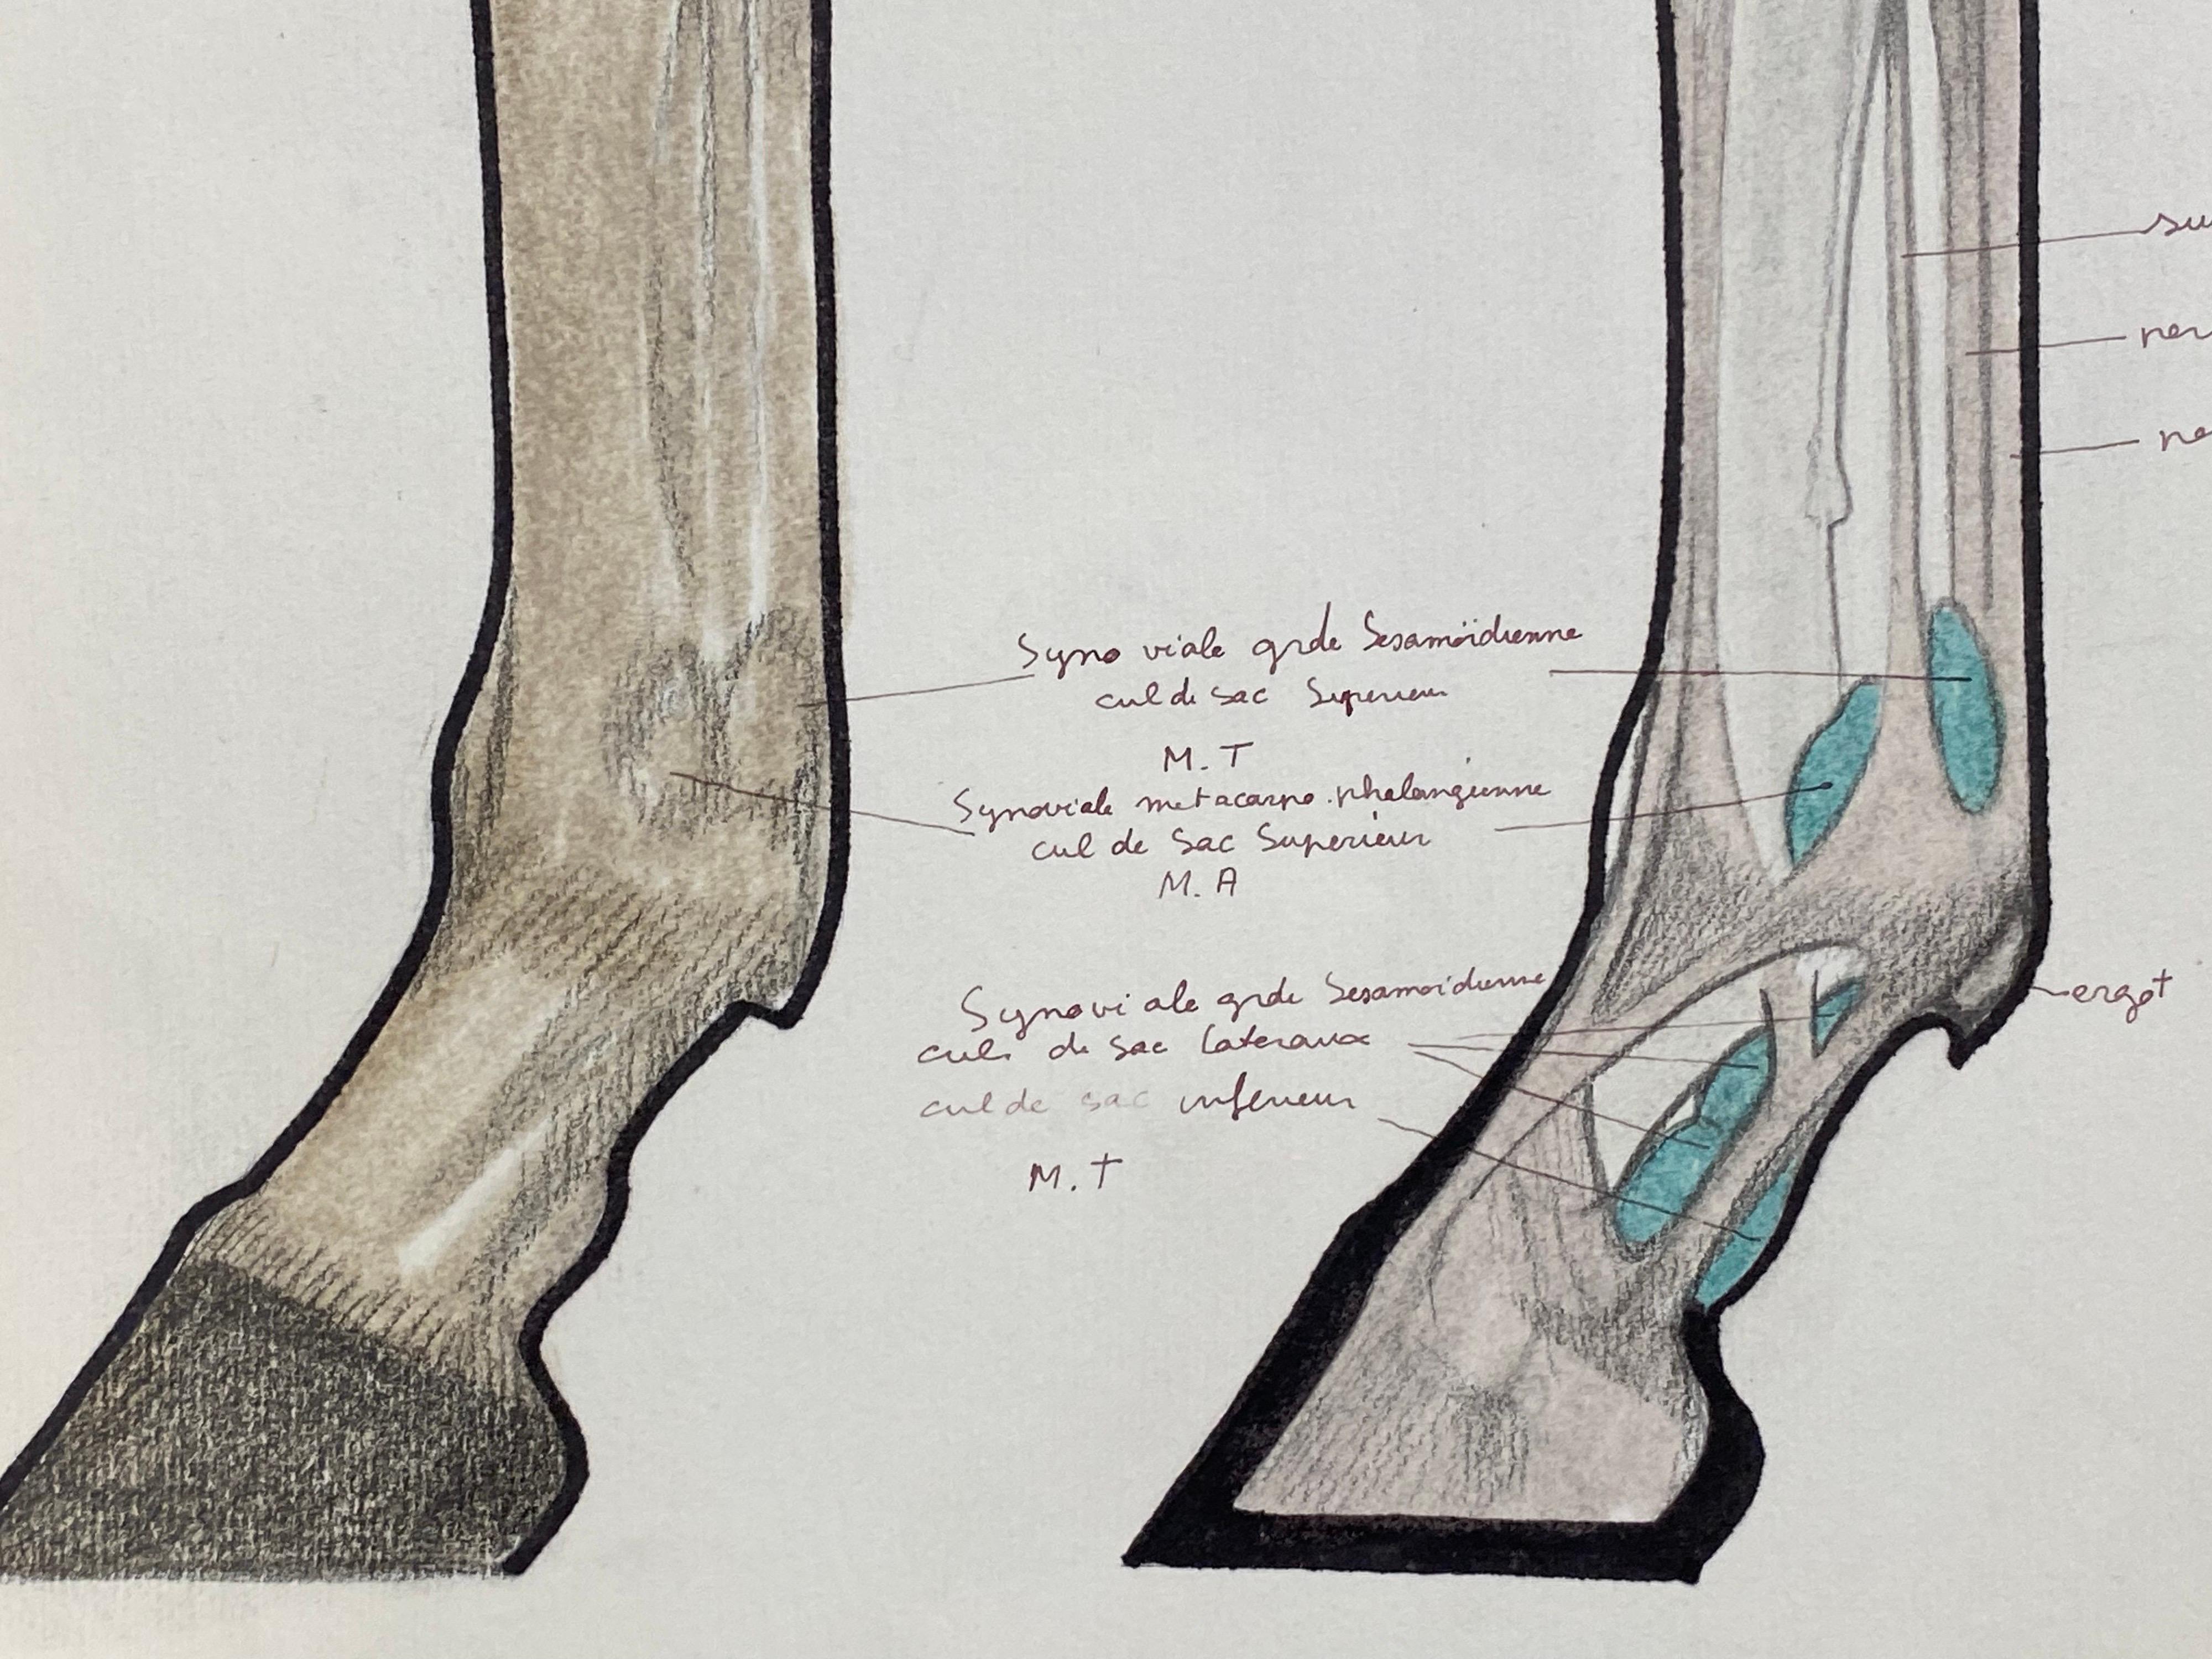 Die Anatomie des Pferdes
von Robert Ladou (Französisch 1929-2014)
originalzeichnung auf Karton geklebt in blauer Mappe/ dickes Papier, ungerahmt
zeichnung: 12 x 19 Zoll
gesamtgröße: 19,75 x 12,75 Zoll
zustand: sehr gut
provenienz: aus dem Nachlass